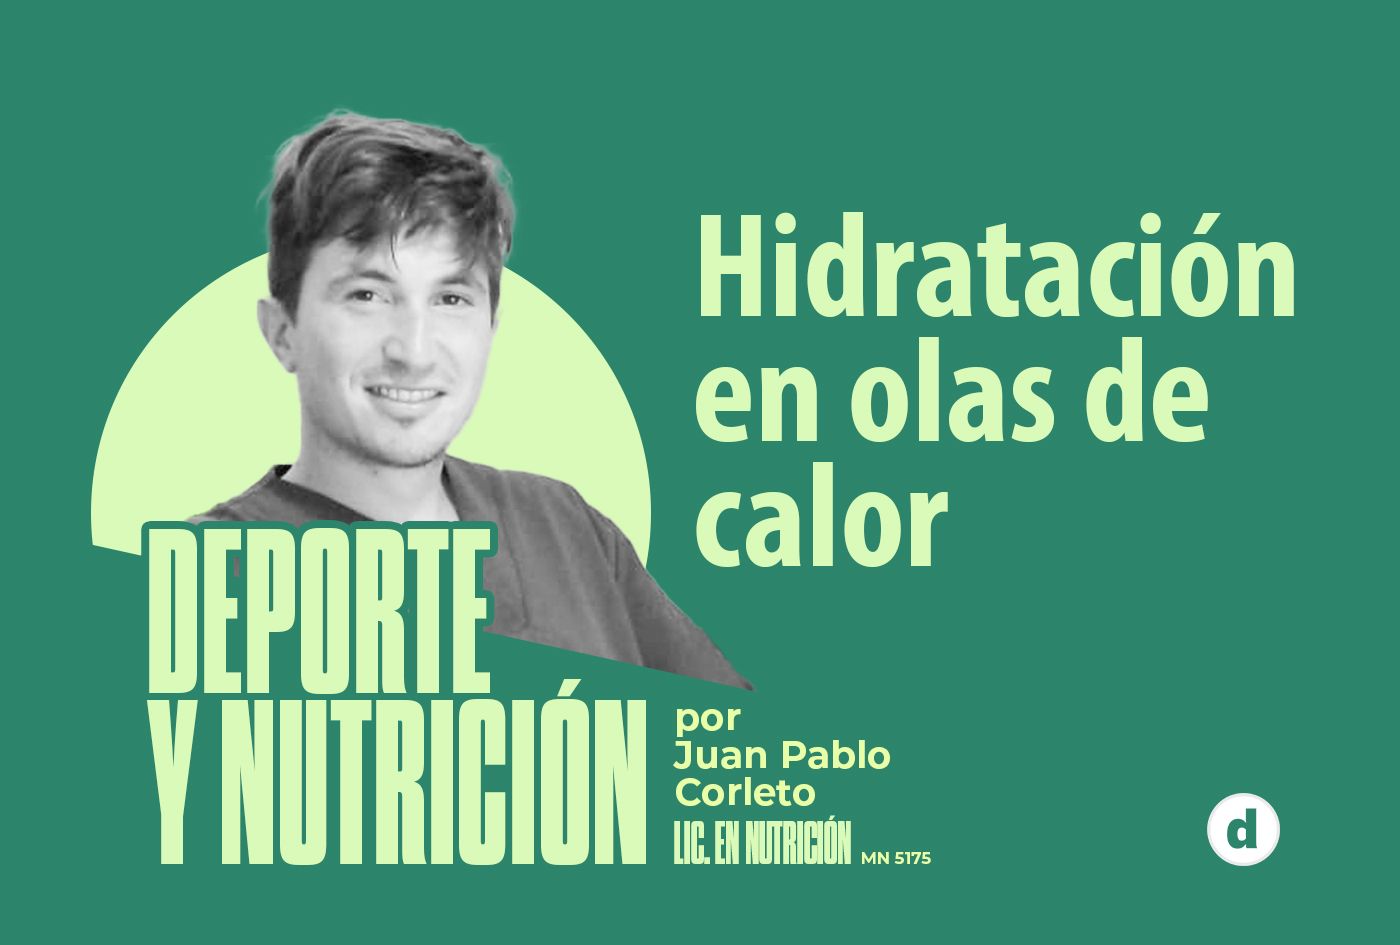 La columna del nutricionista Juan Pablo Corleto: “Hidratación en olas de calor”